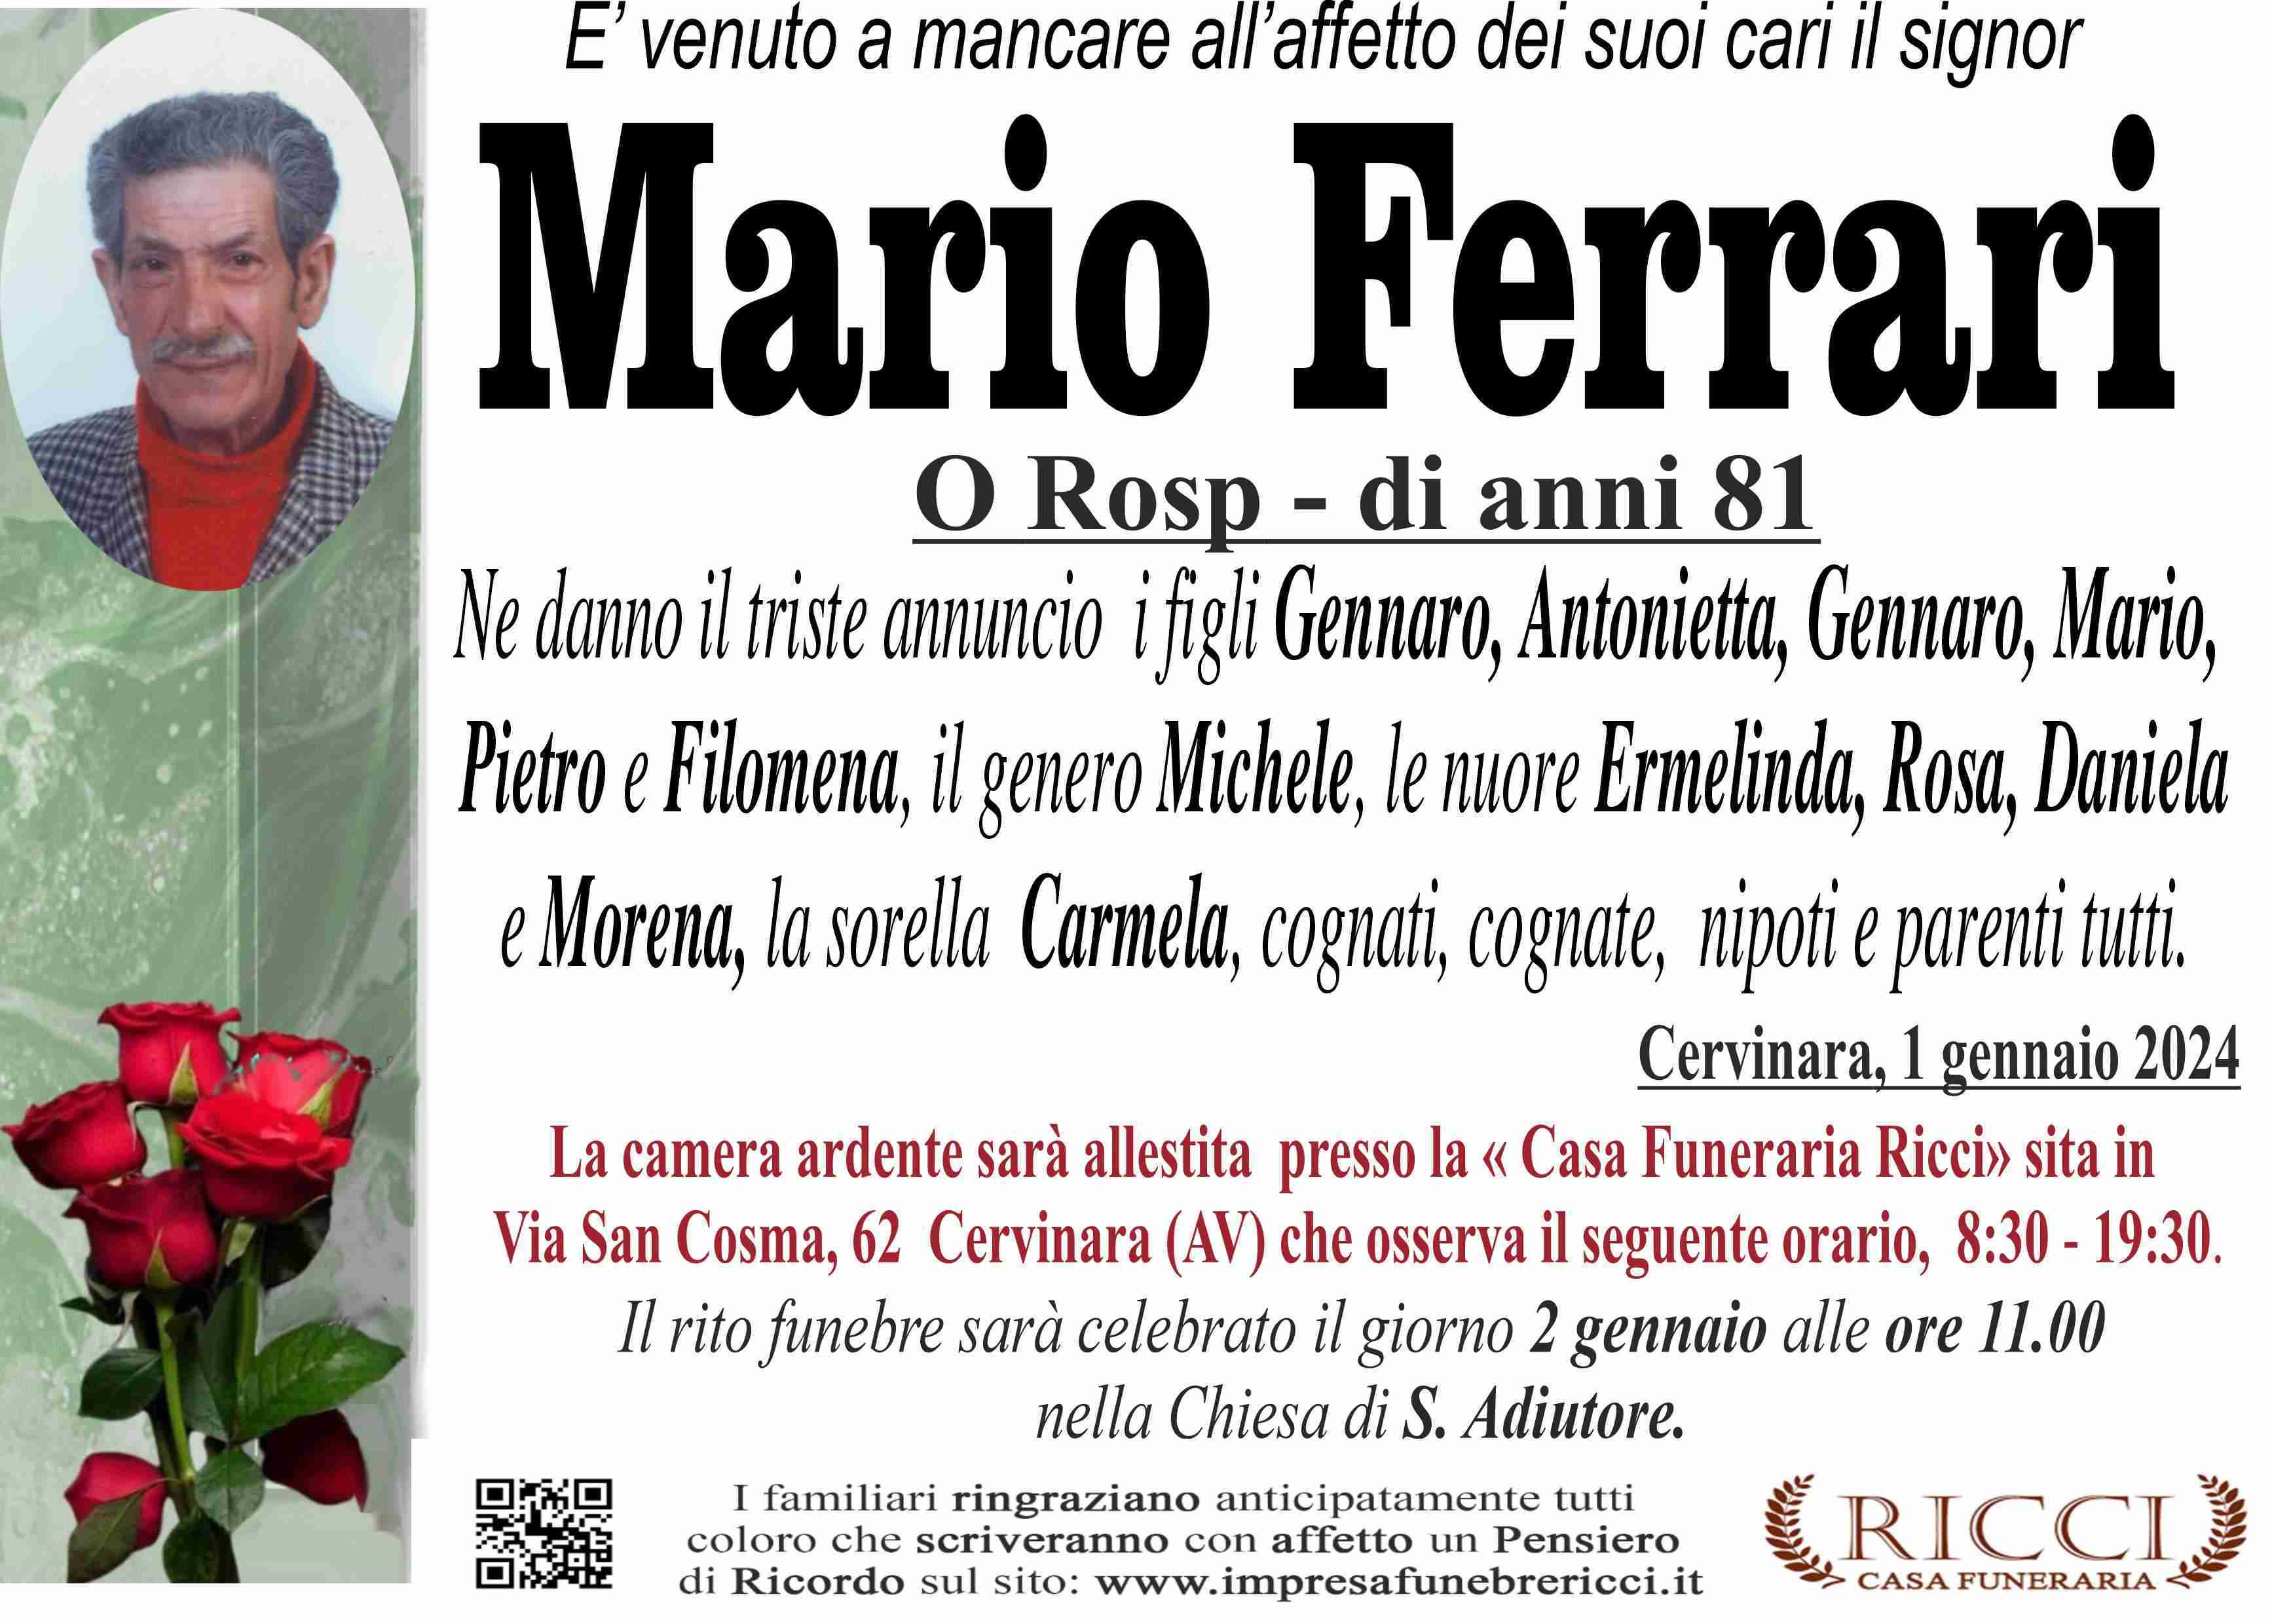 Mario Ferrari